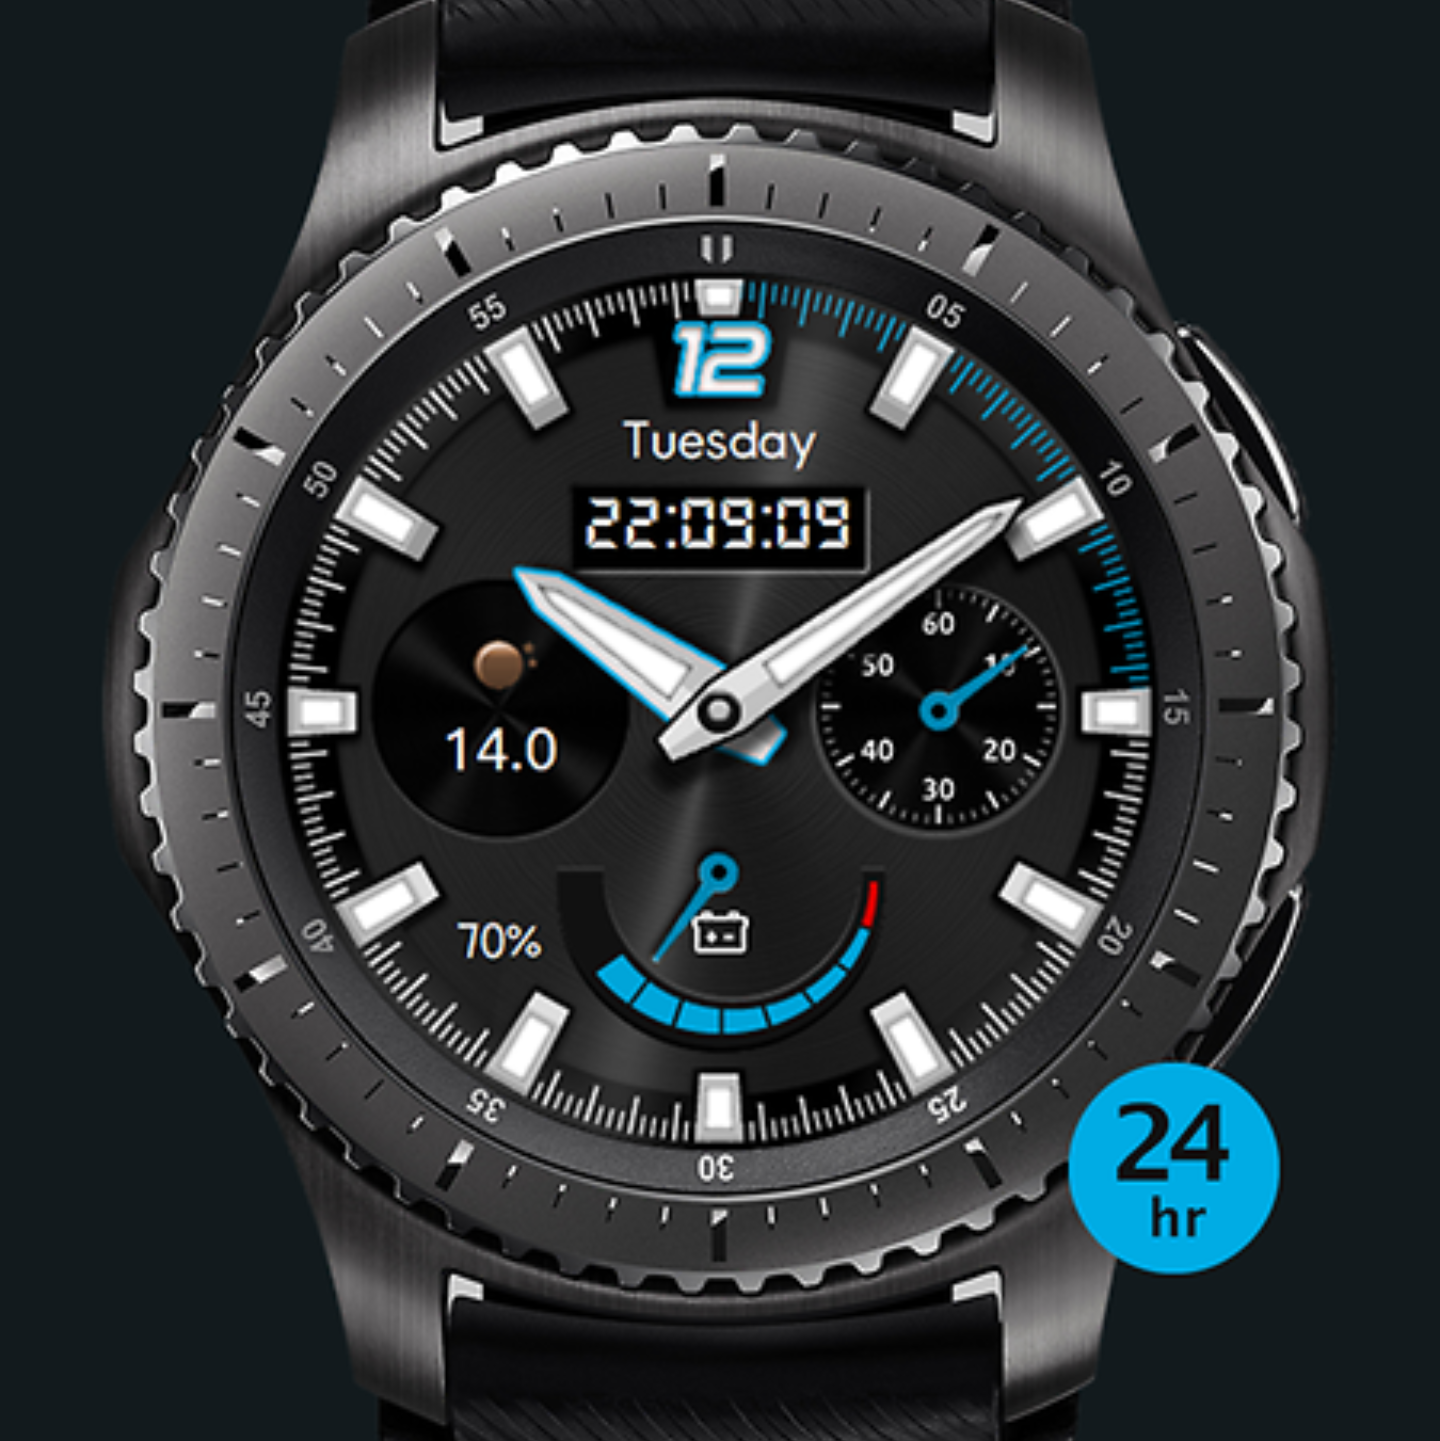 Циферблаты для Samsung Gear s3. Циферблаты для Samsung Galaxy watch. Циферблаты самсунг вотч 3. Samsung s3 Frontier циферблаты. Часы galaxy watch циферблаты